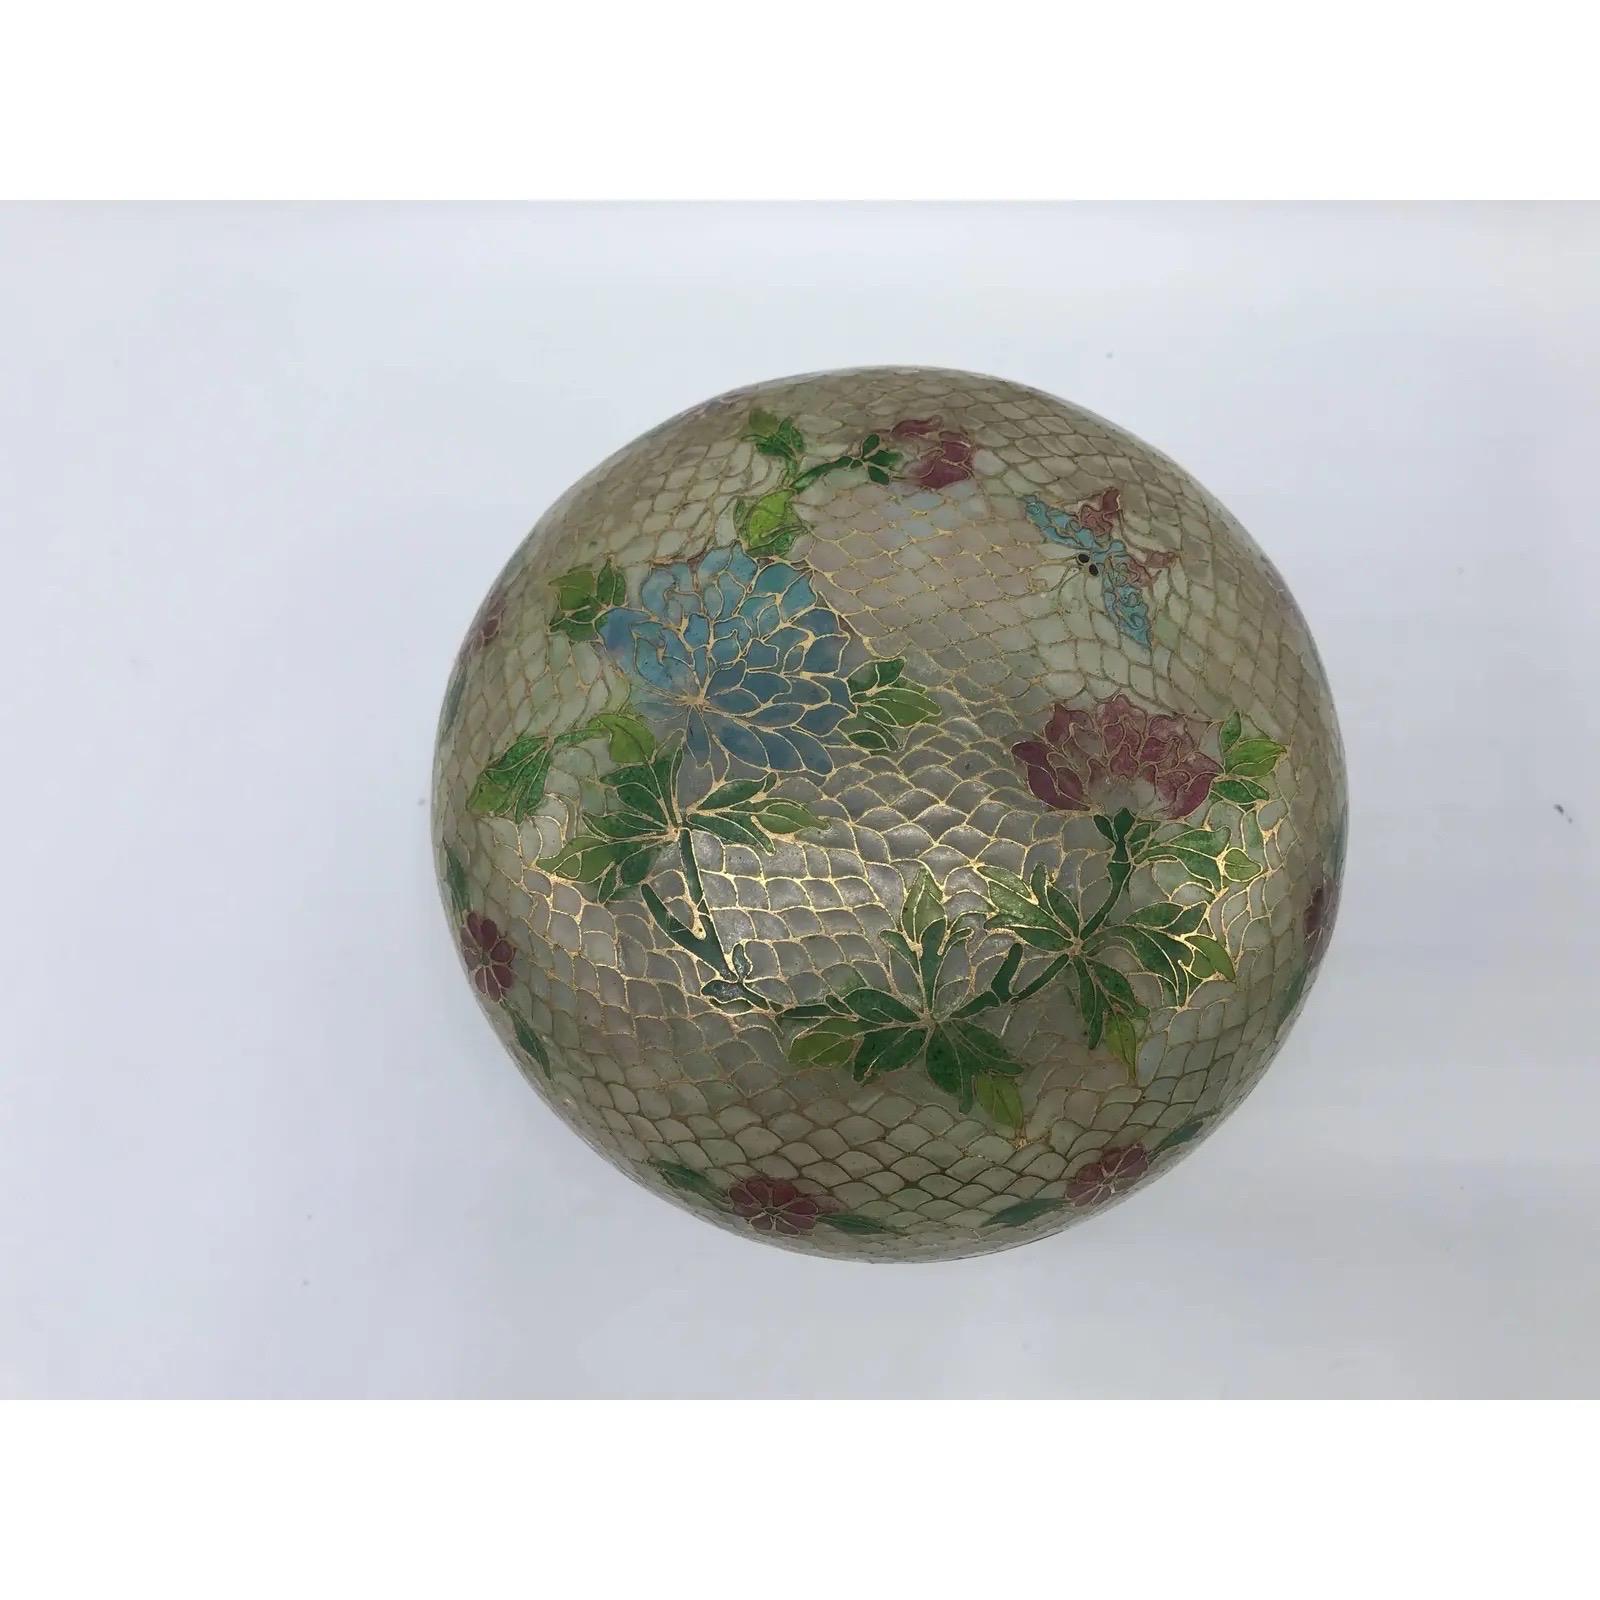 Art Nouveau 19th Century French Plique a Jour Cloisonné Mosaic Lidded Bowl on Stand For Sale